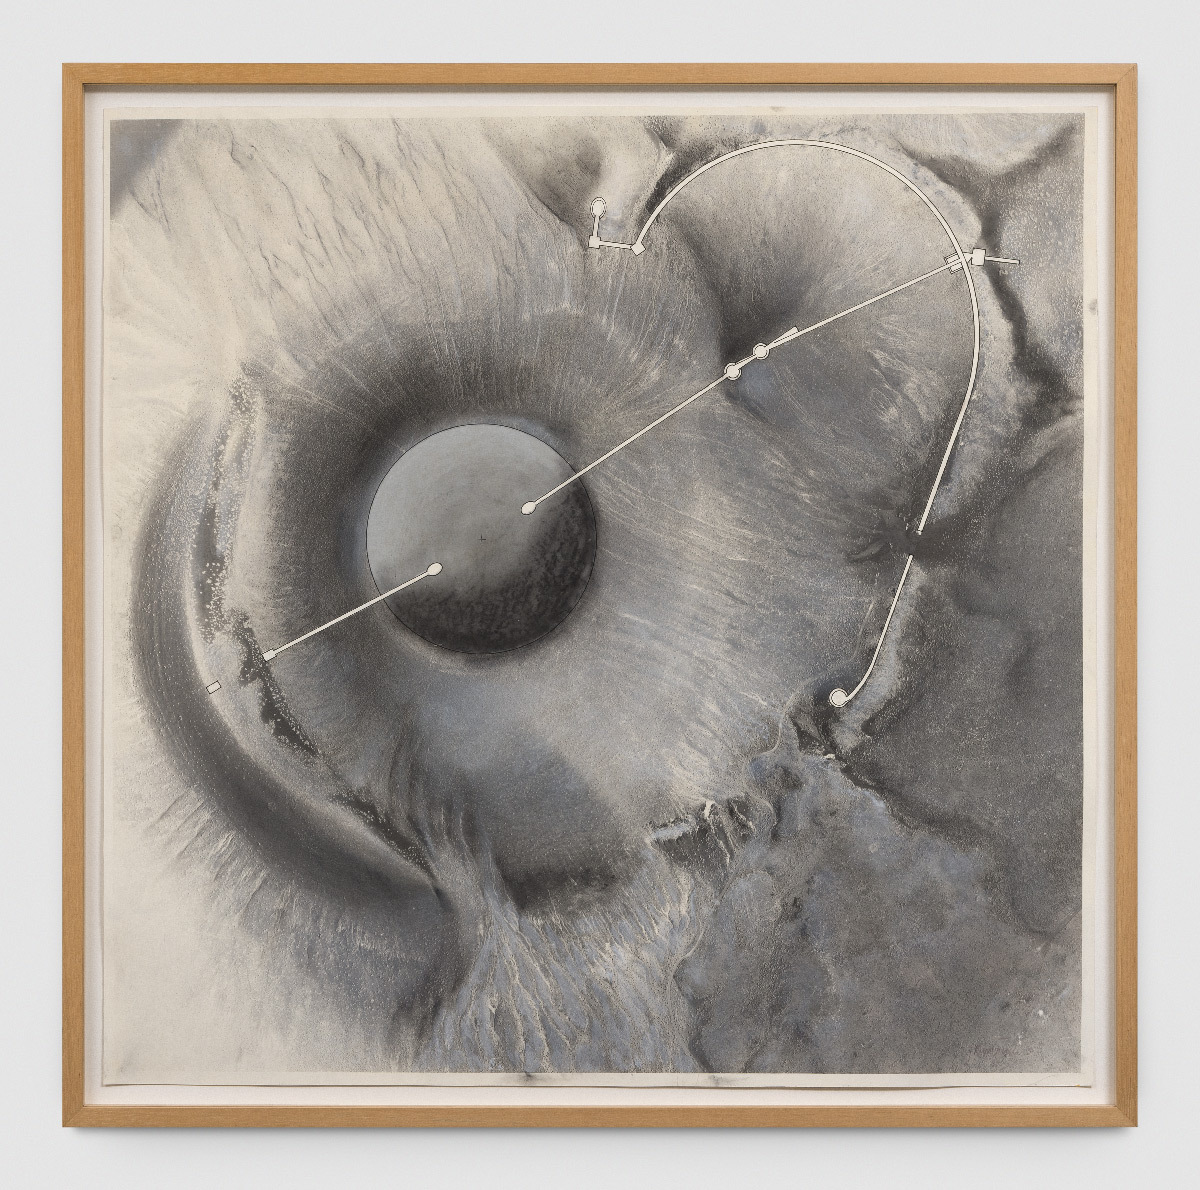 Roden Crater Basic Flour Plans, étude de James Turrell, 1991, 101,7 x 102,7 cm